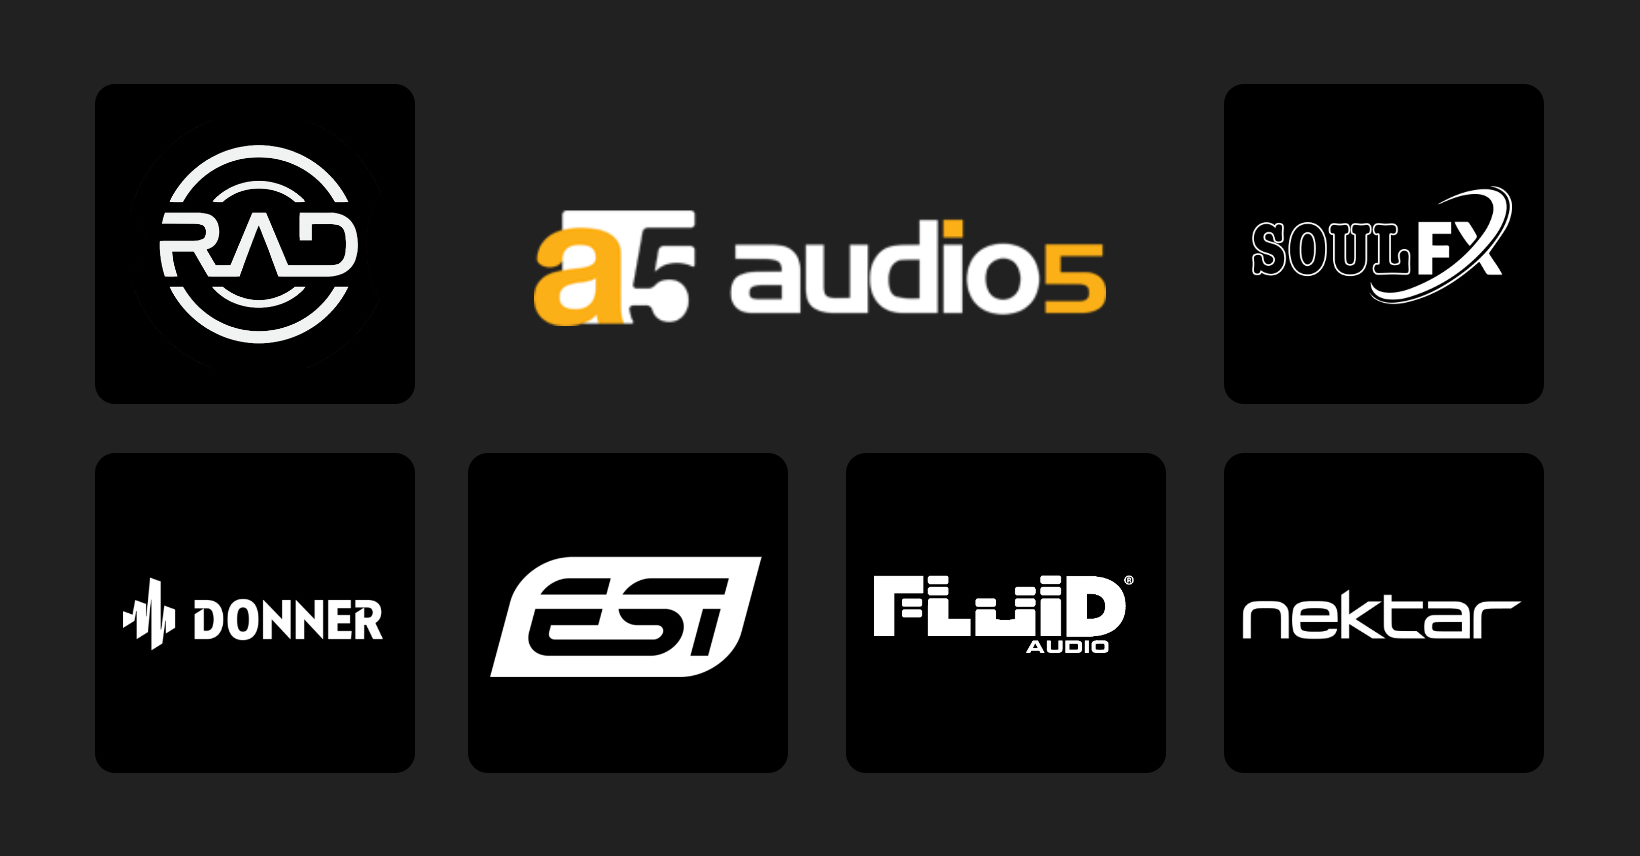 (c) Audio5.com.br